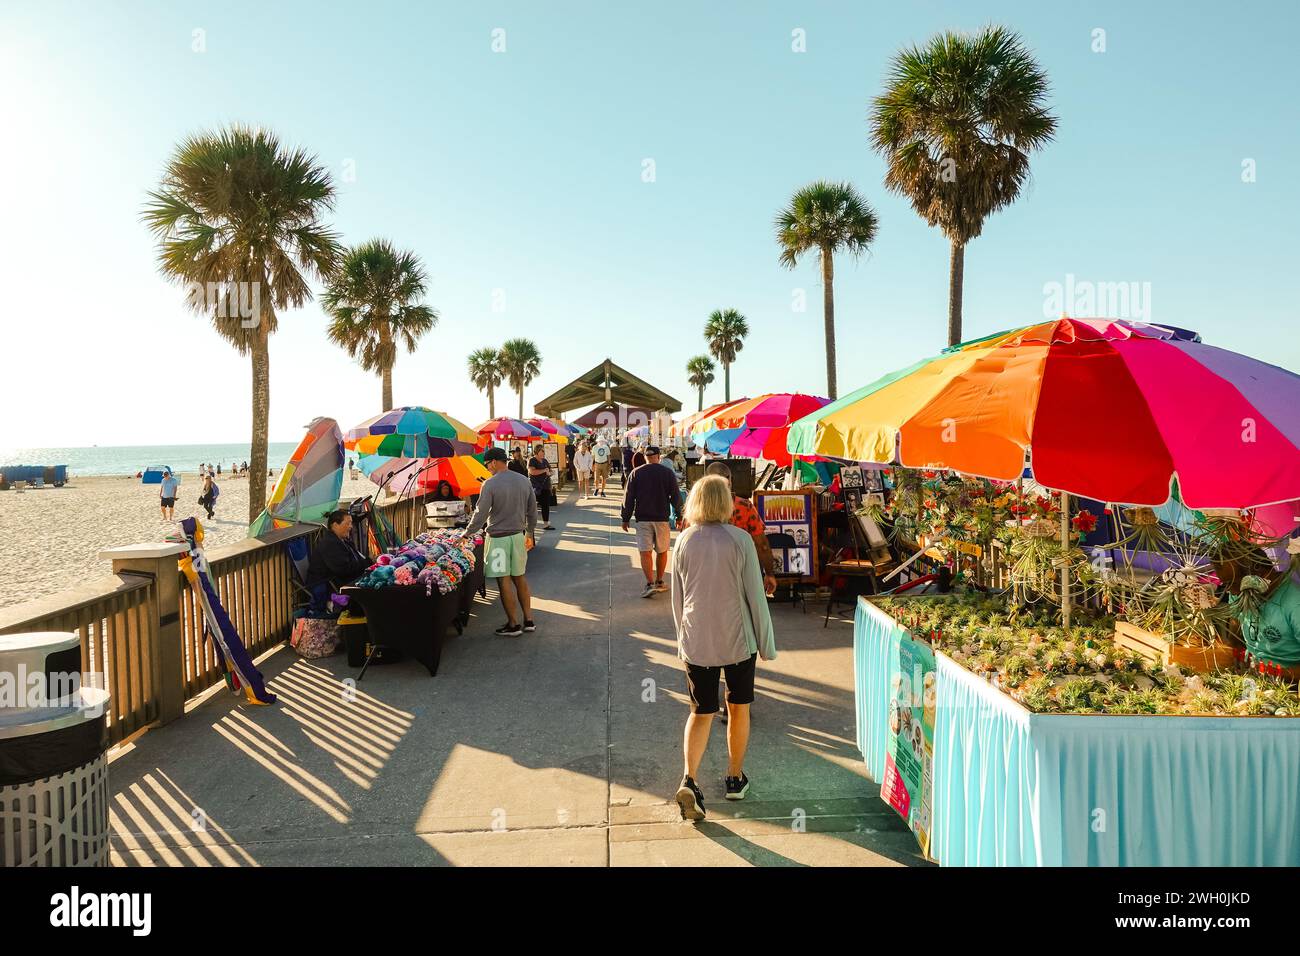 Vivace mercato all'aperto vicino a una spiaggia in Florida, con bancarelle, venditori ambulanti, in una giornata di sole sotto il cielo limpido Foto Stock